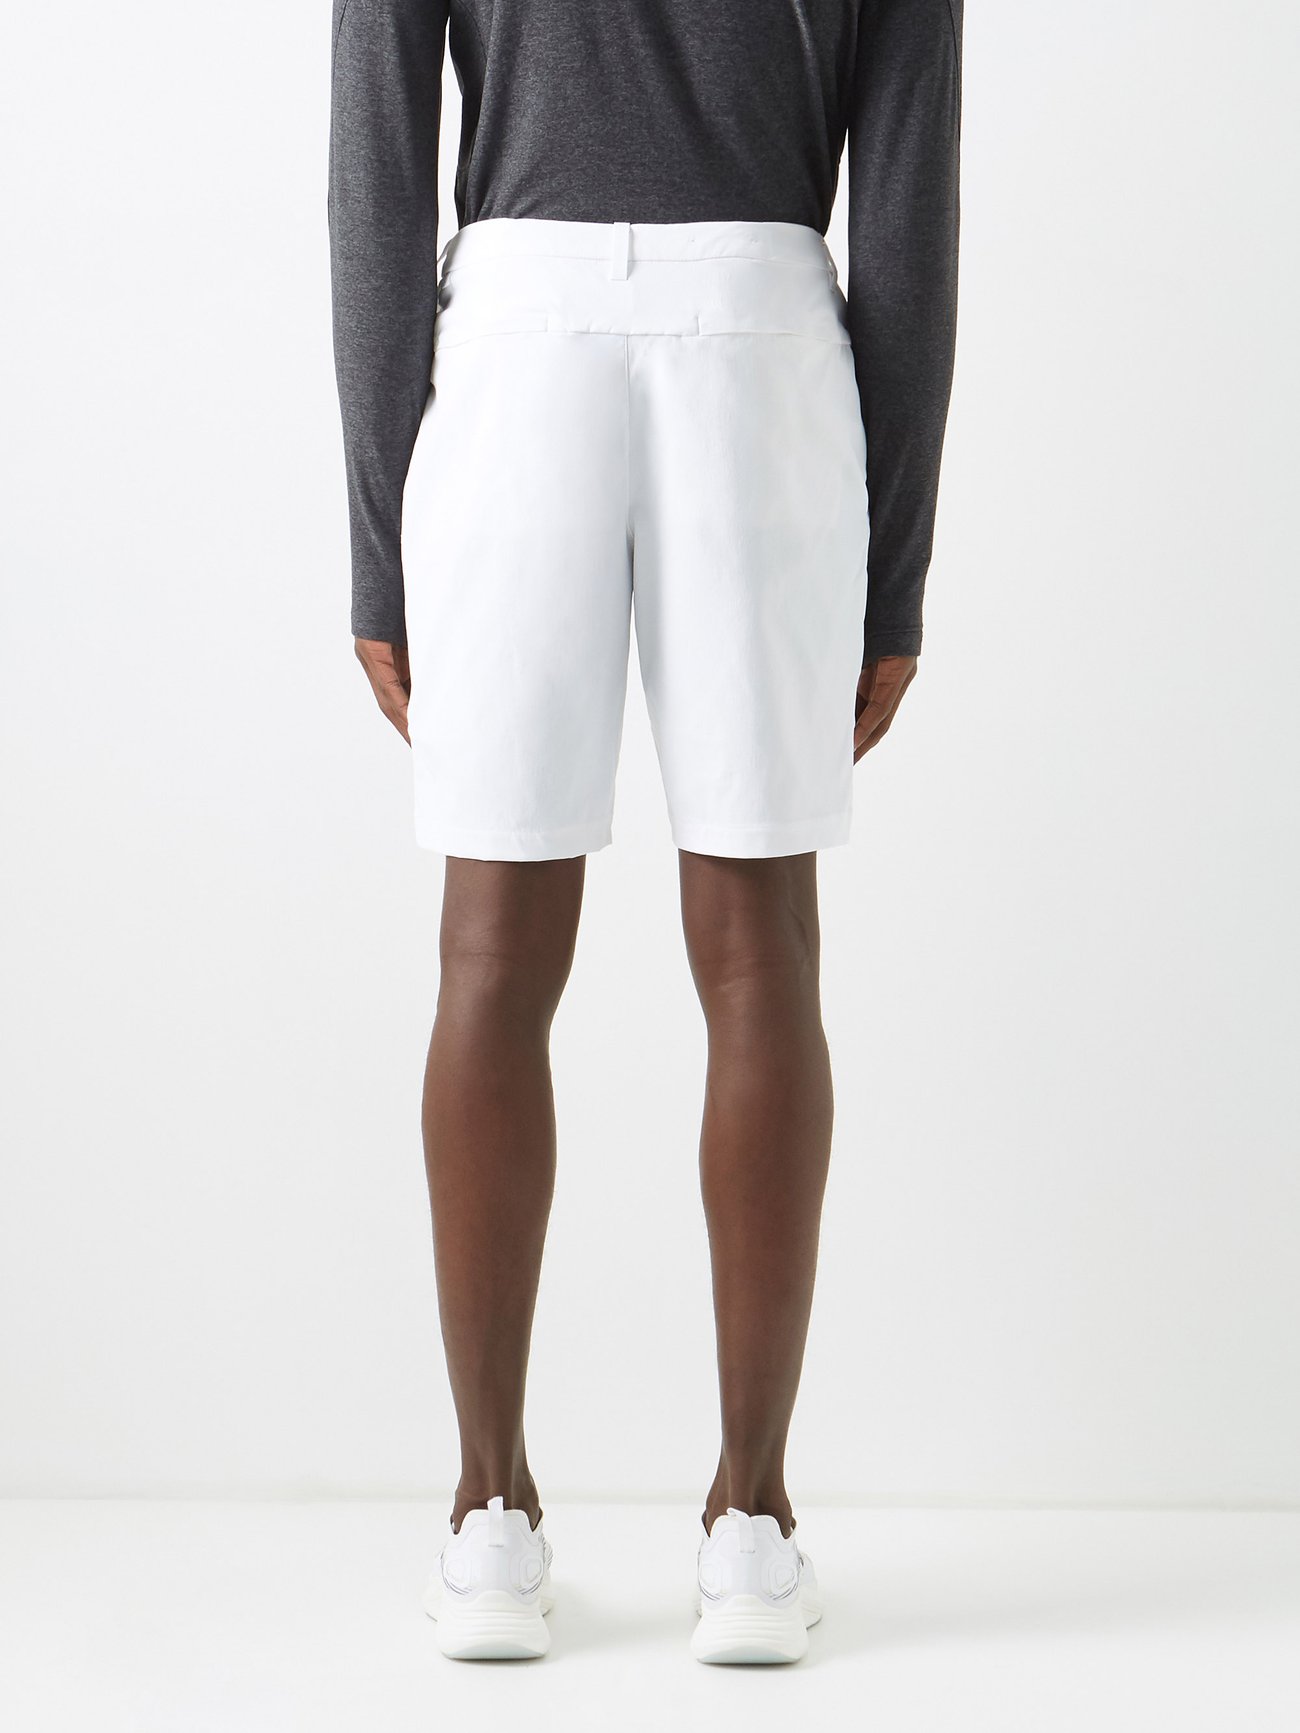 White Commission 10 stretch-nylon shorts, Lululemon